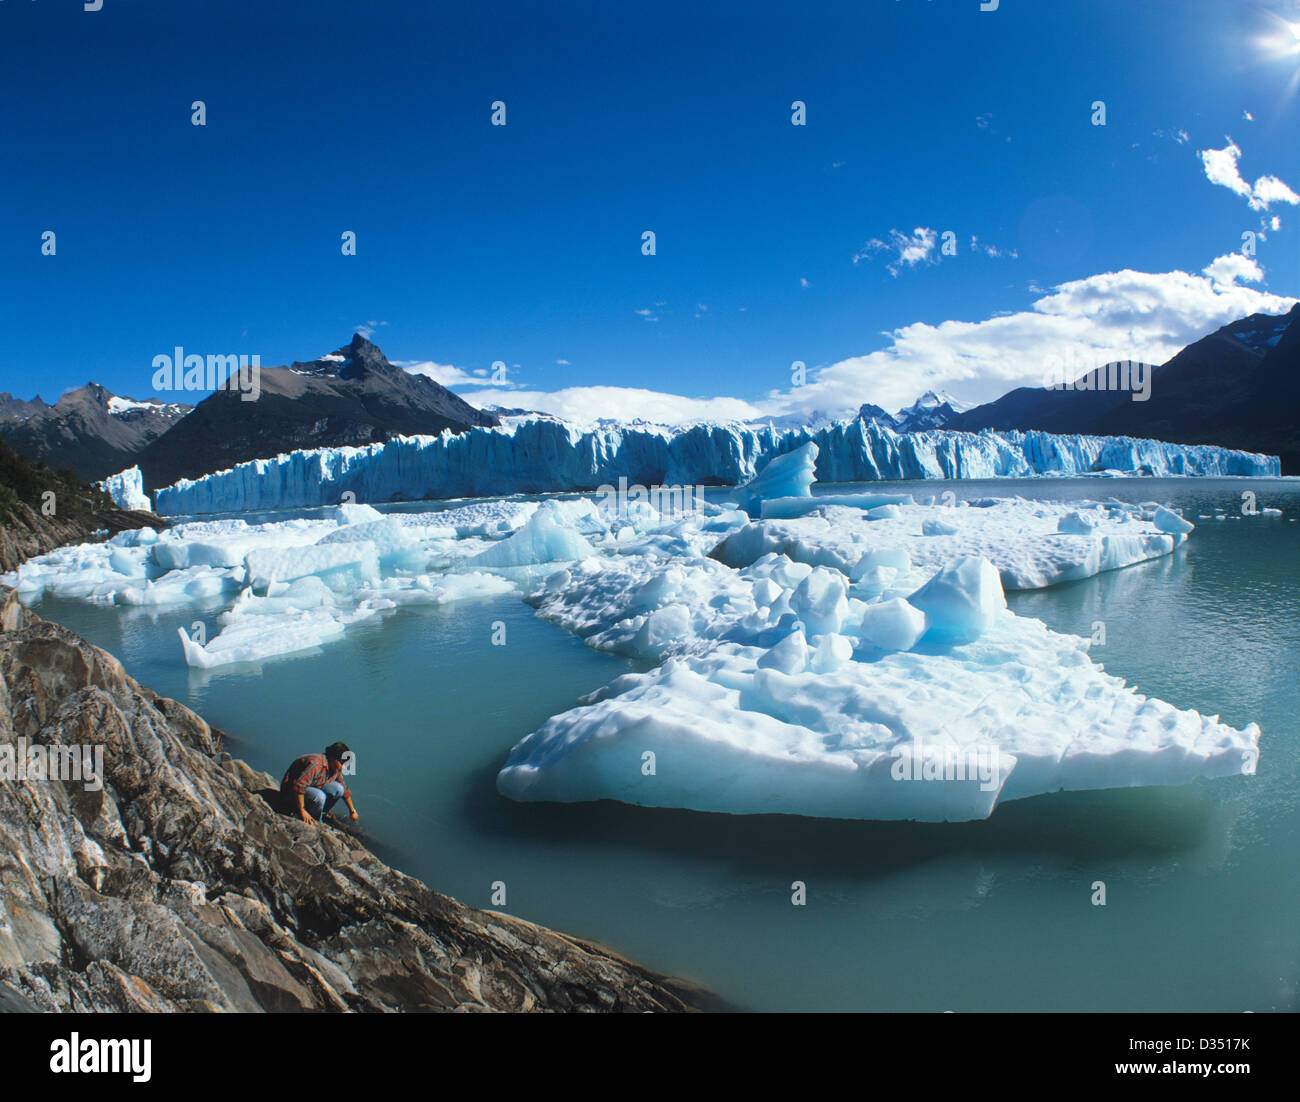 Argentina, Santa Cruz Province, Lake Argentino; Los Glaciares National Park, Perito Moreno Glacier, Canal de los Témpanos Stock Photo